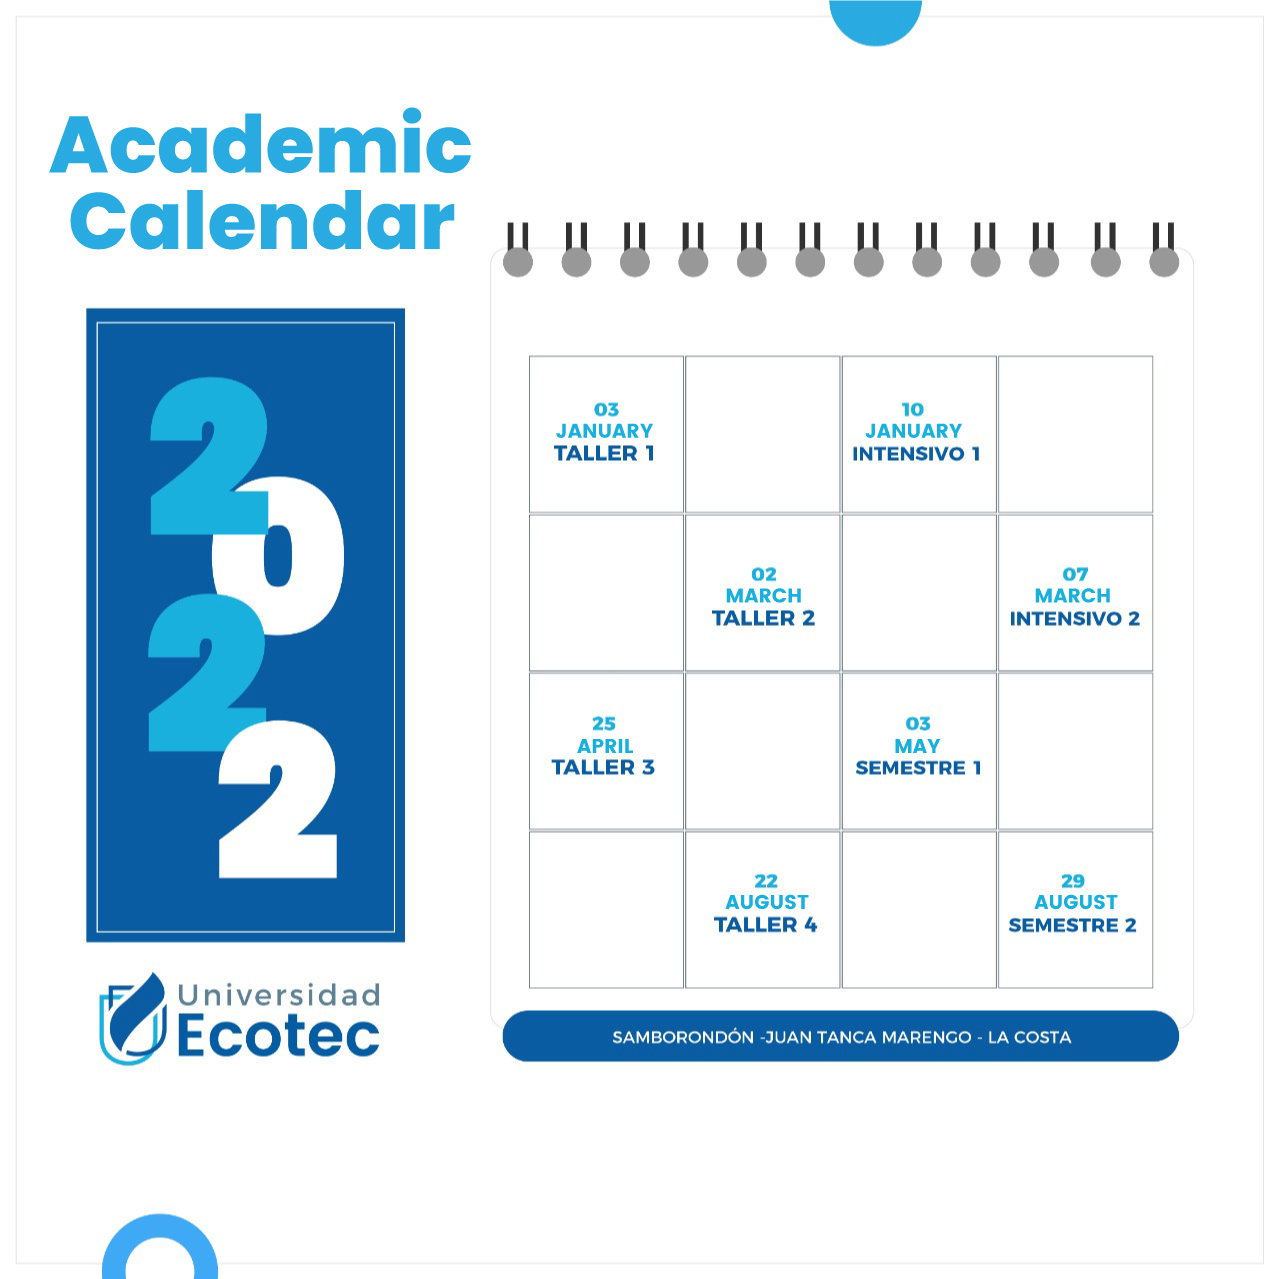 Academic Calendar Universidad Tecnol gica ECOTEC En Ecuador